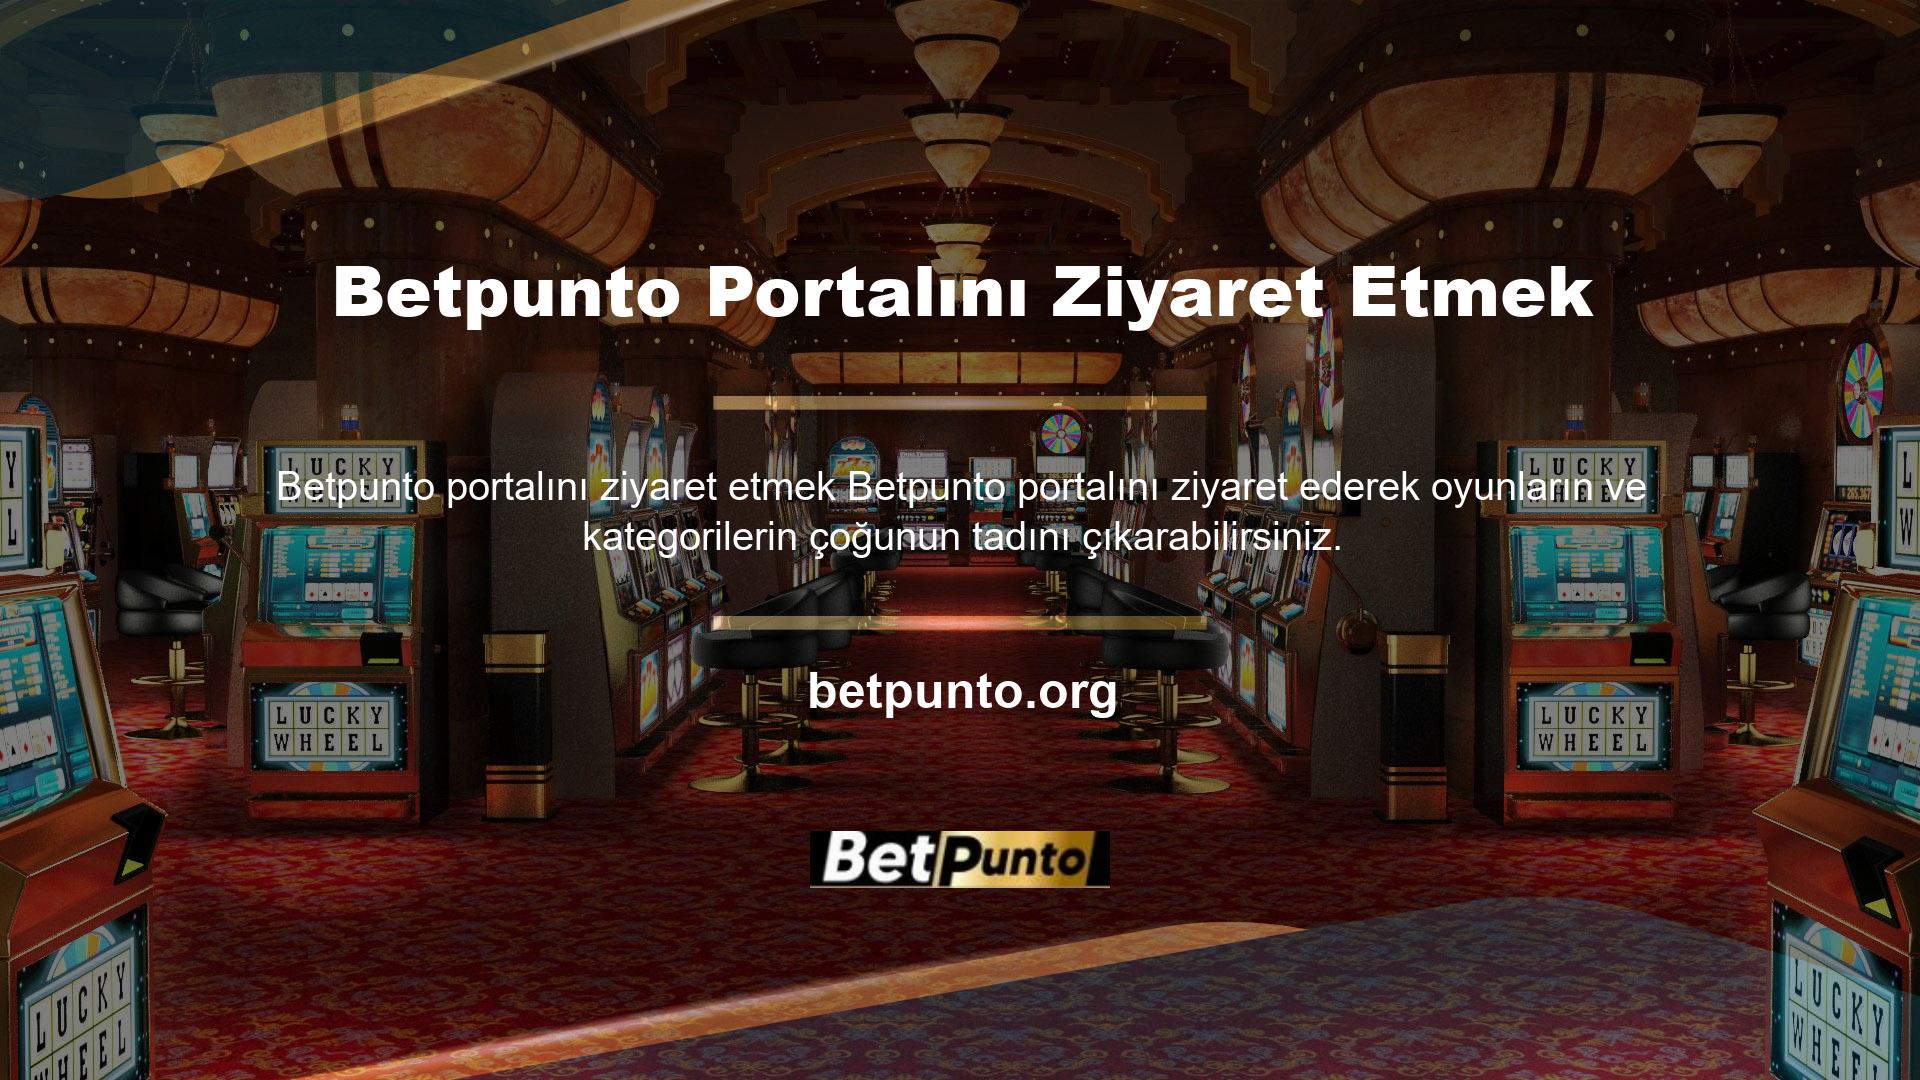 Betpunto giriş adresi yakında sitemizde paylaşılacak ve güncellenecektir, bu nedenle bahisçiler ve casino tutkunları için bir sürpriz olmamalıdır